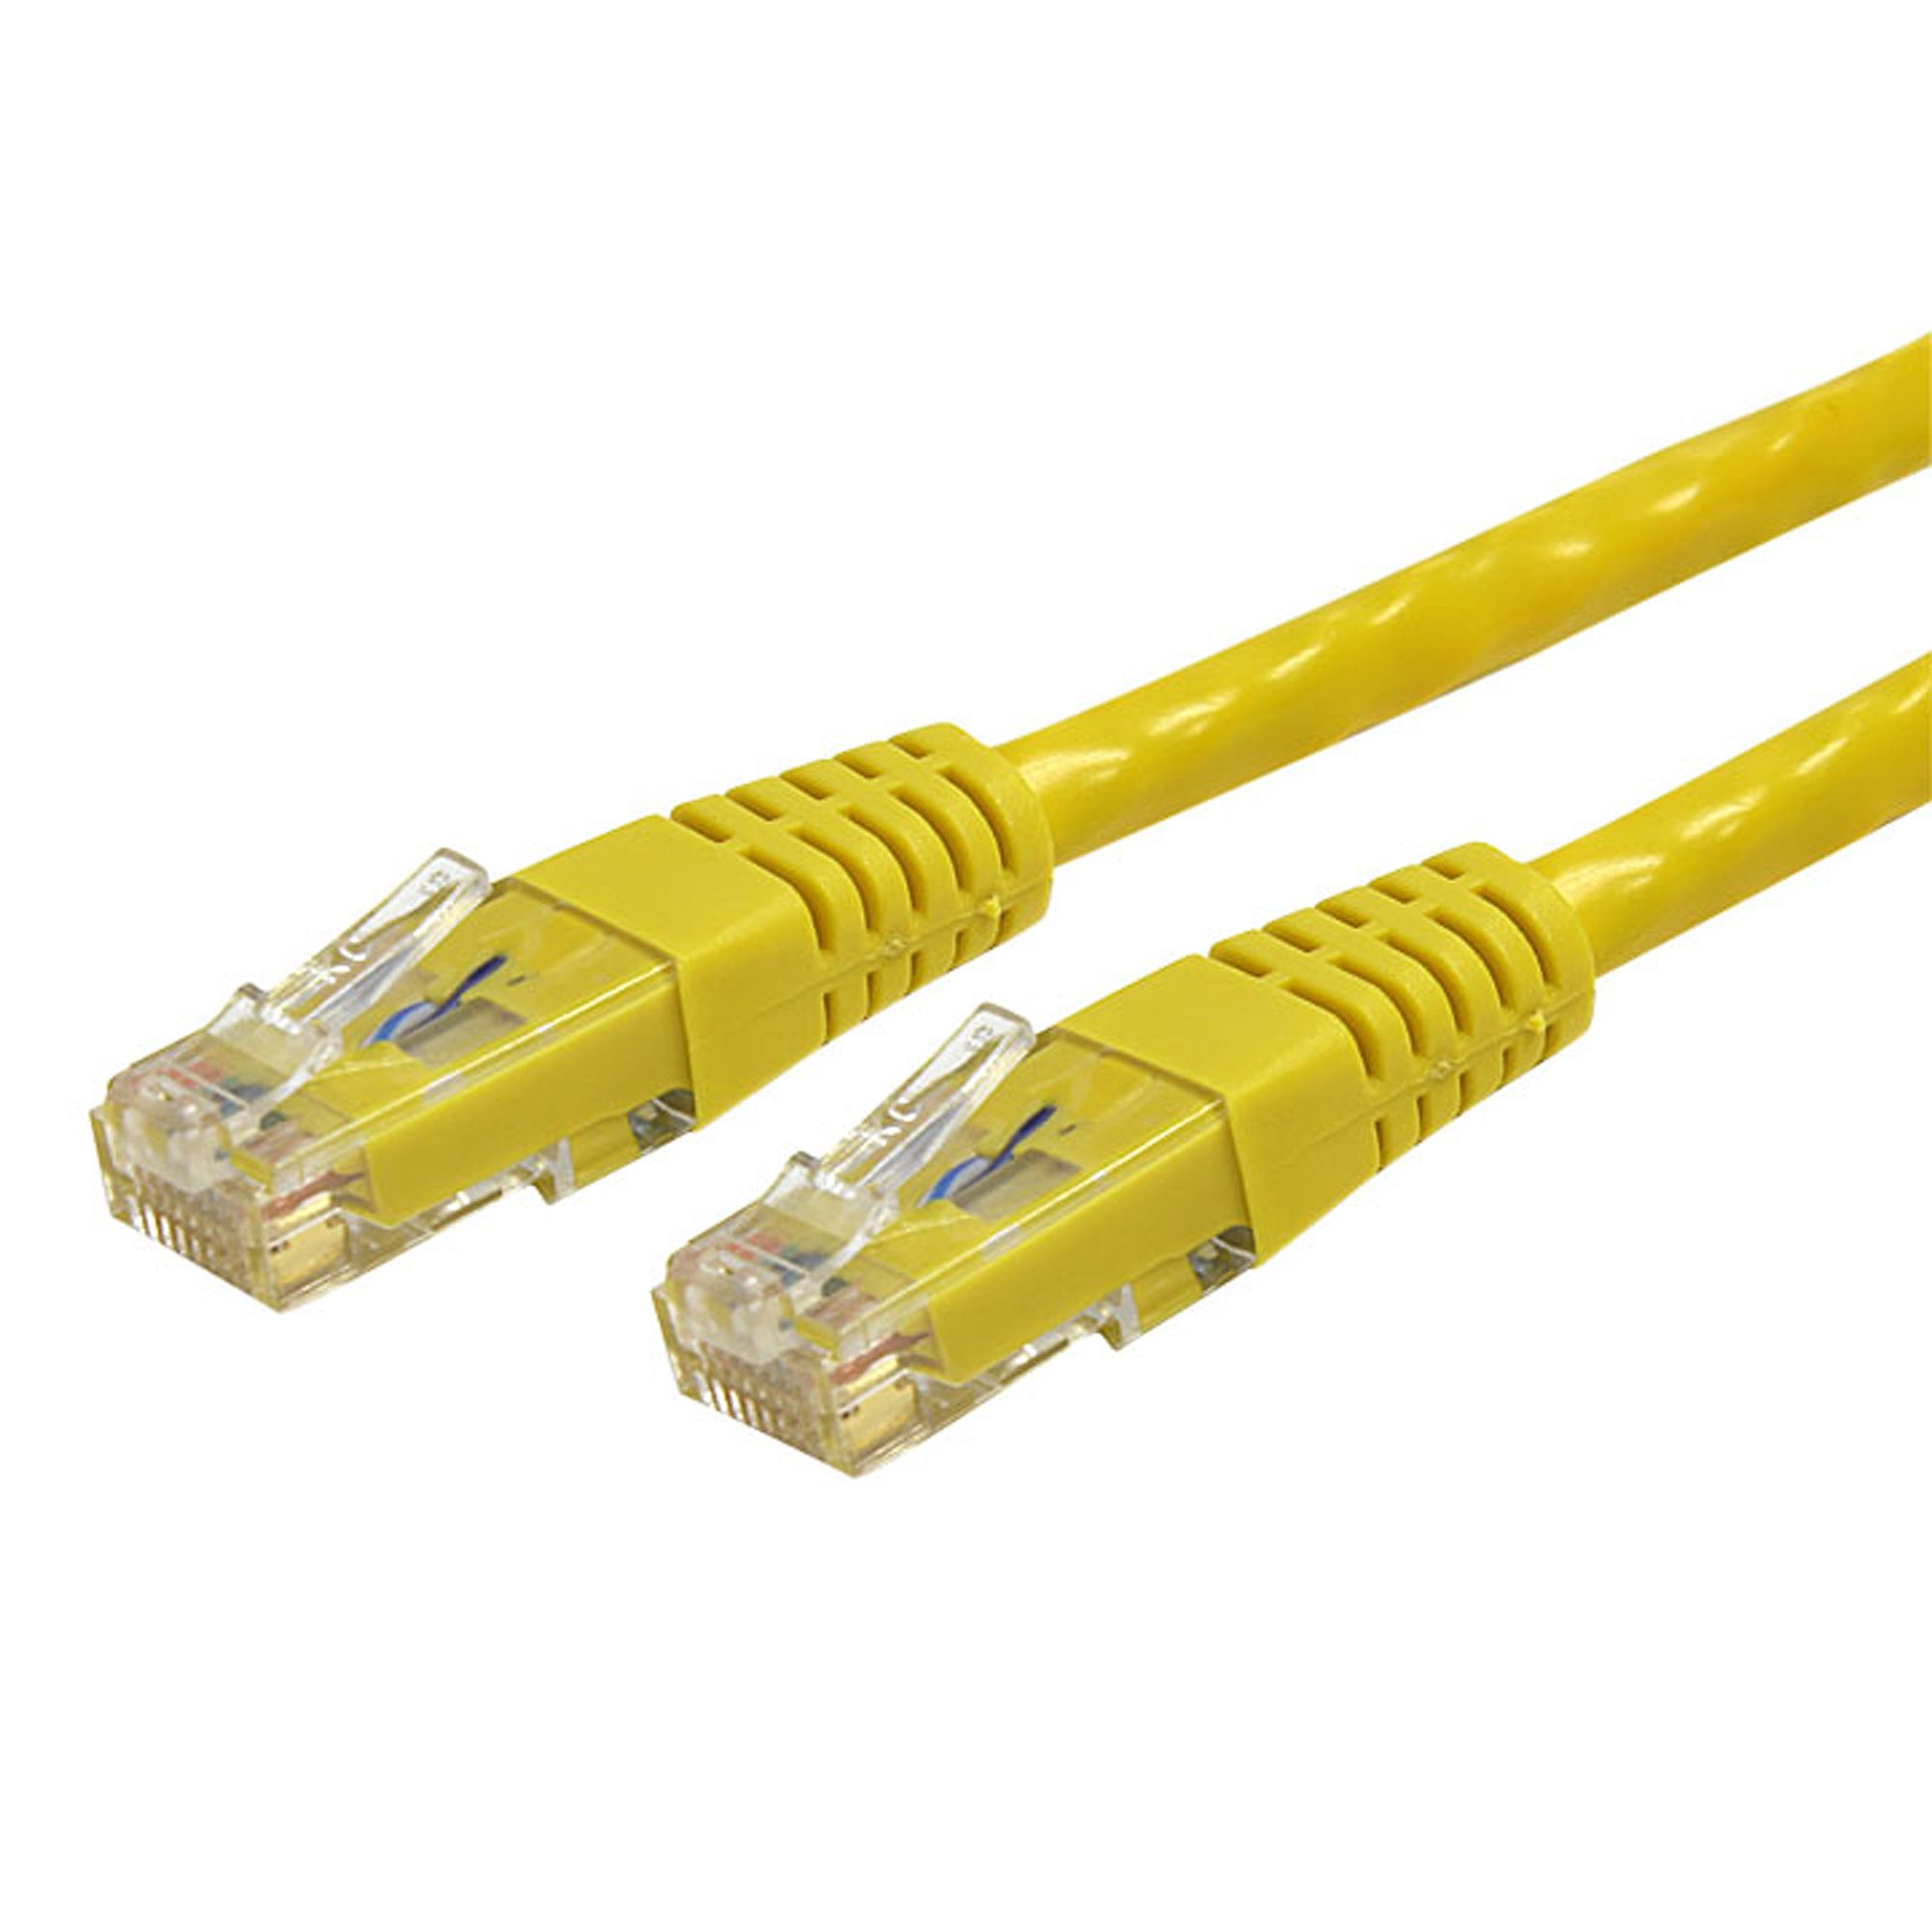 Cable 91Cm Gigabit Cat6 Utp Rj45 Patch Amarillo  Startech C6Patch3Yl